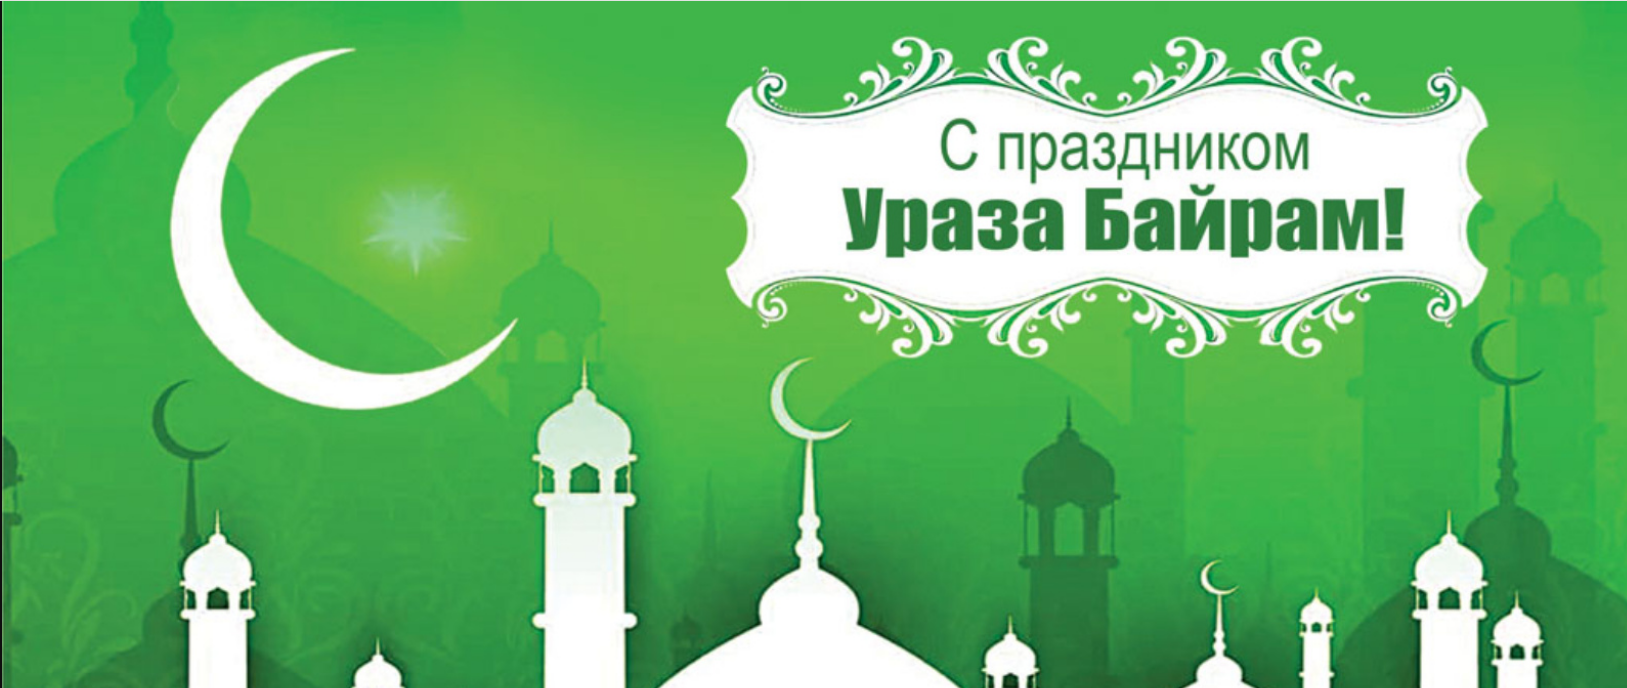 Картинки поздравления с рамаданом на татарском языке - 19 шт